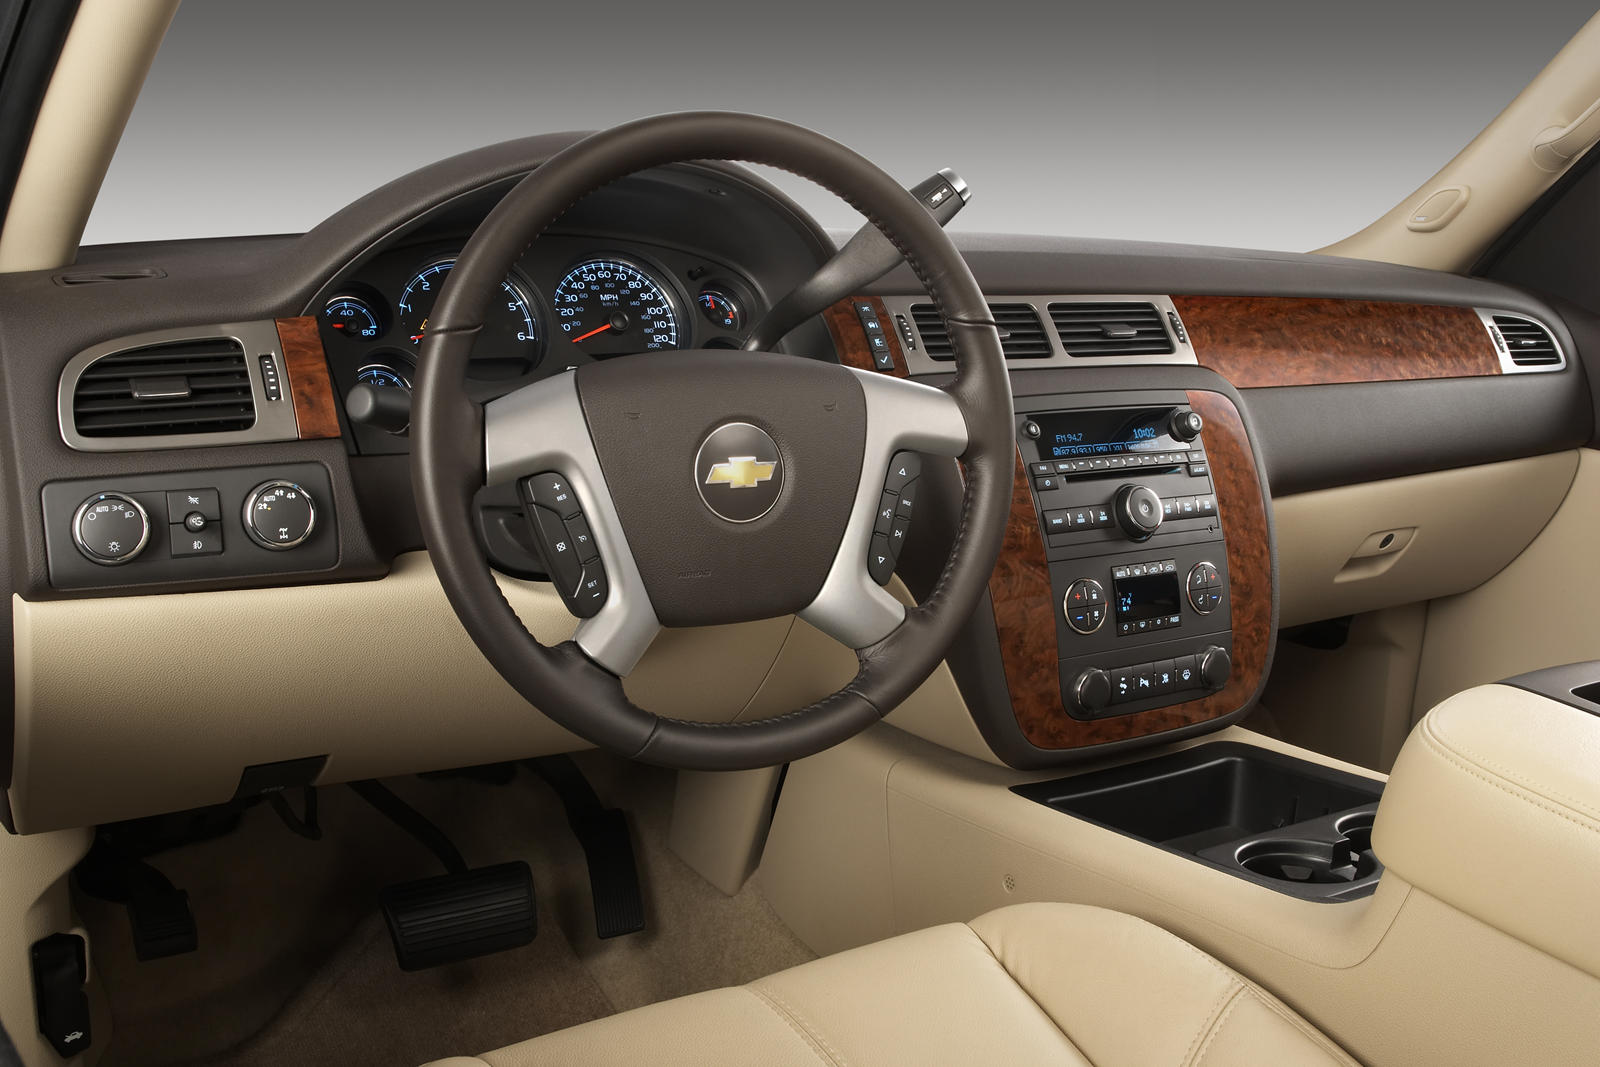 2012 Chevrolet Silverado 1500 Hybrid Interior Photos | CarBuzz